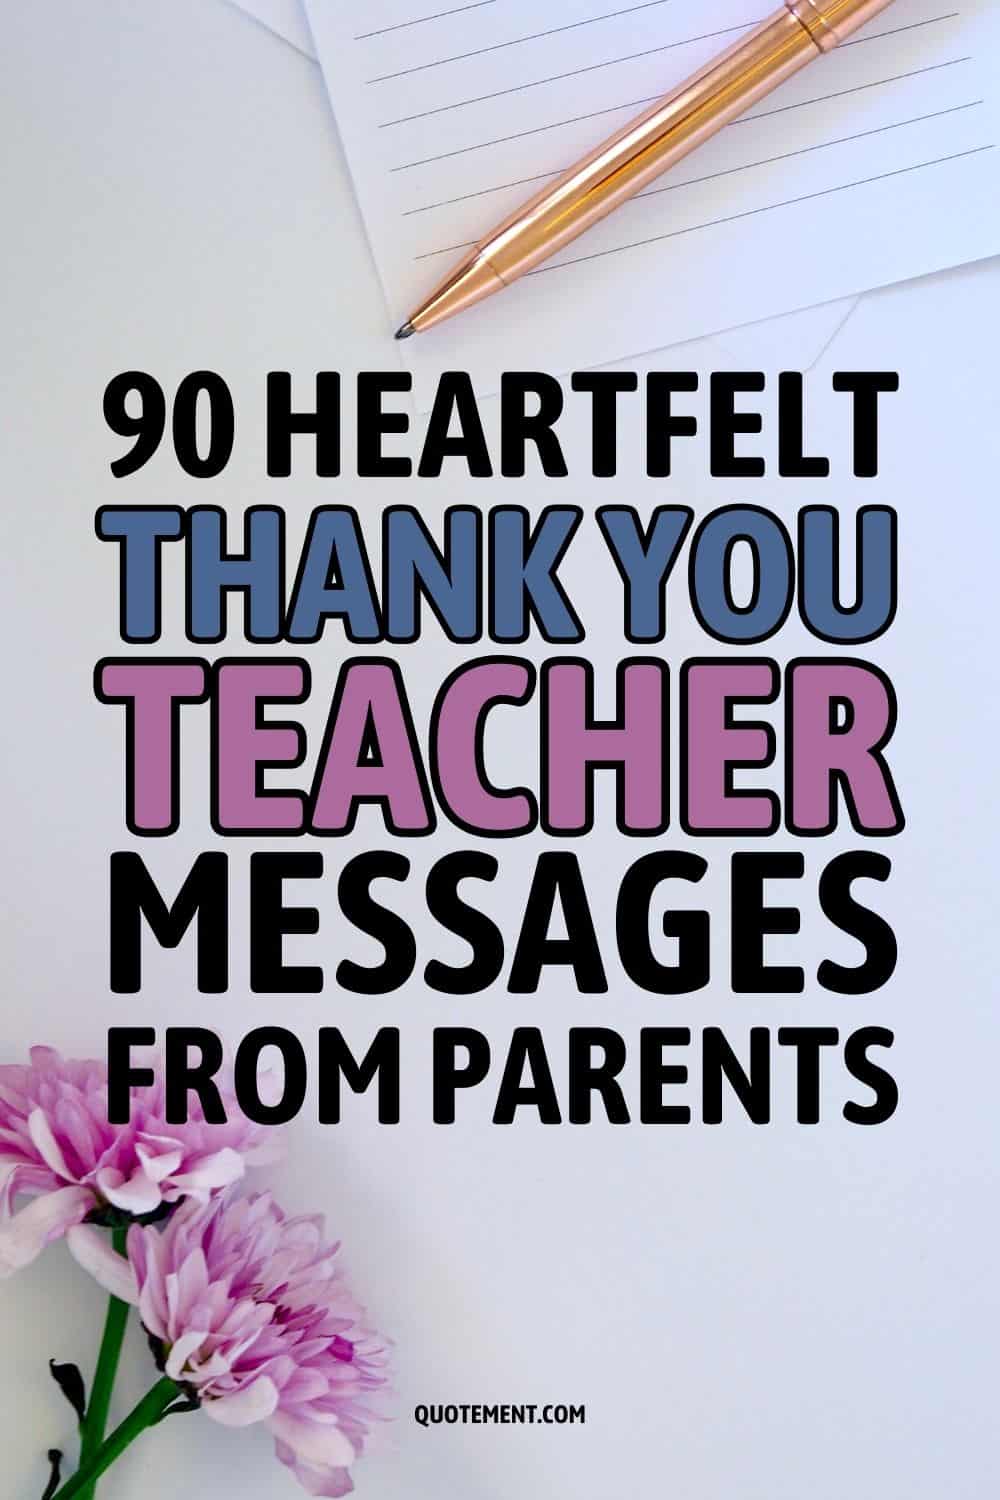 90 Heartfelt Thank You Teacher Messages From Parents
